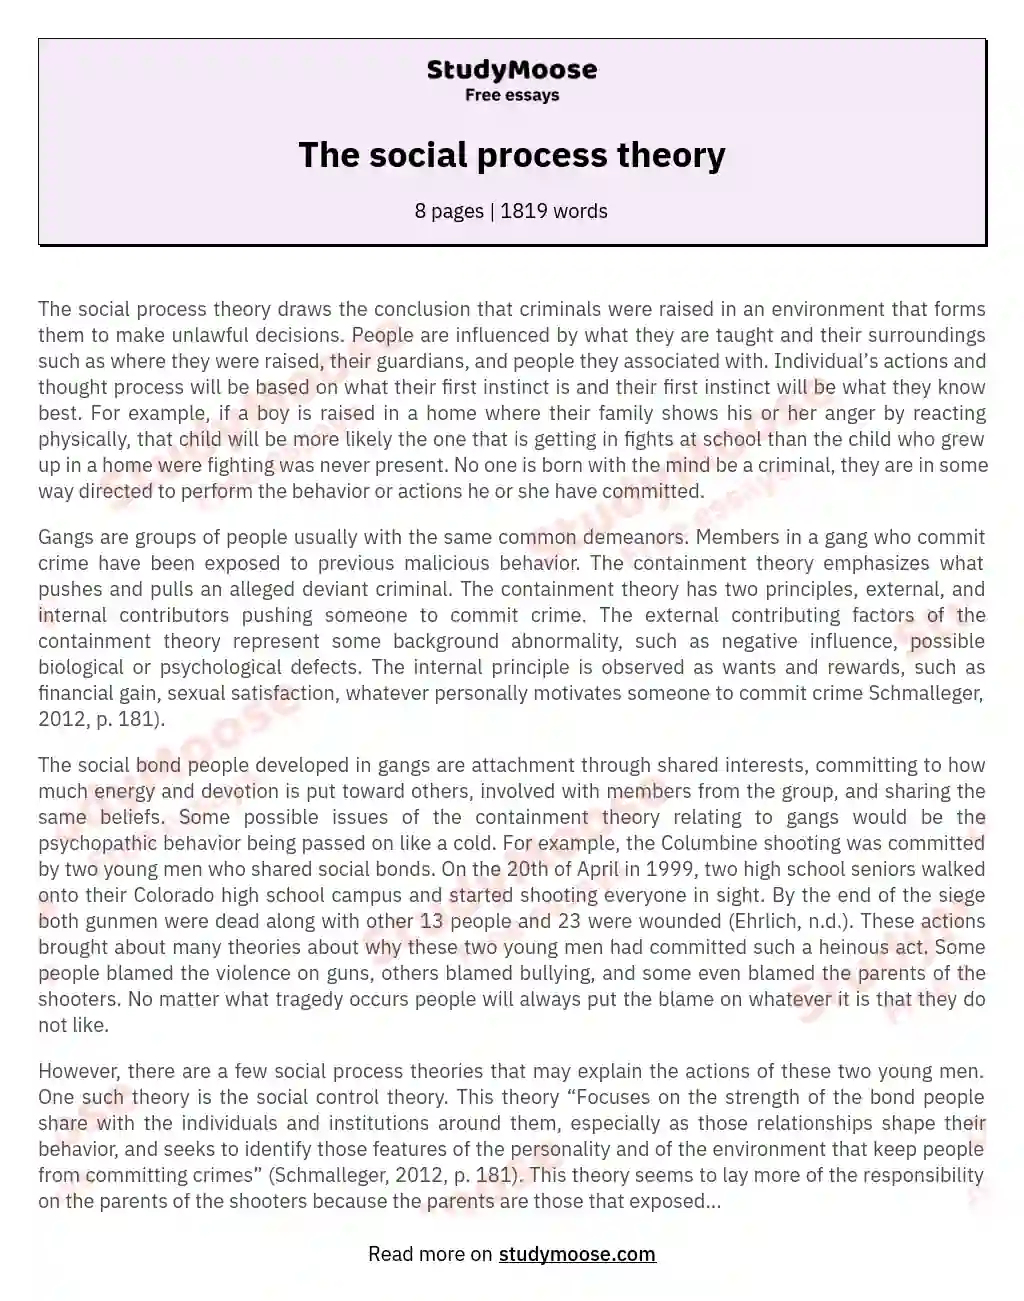 Social Process Theories in Criminology: Understanding Criminal Behavior essay